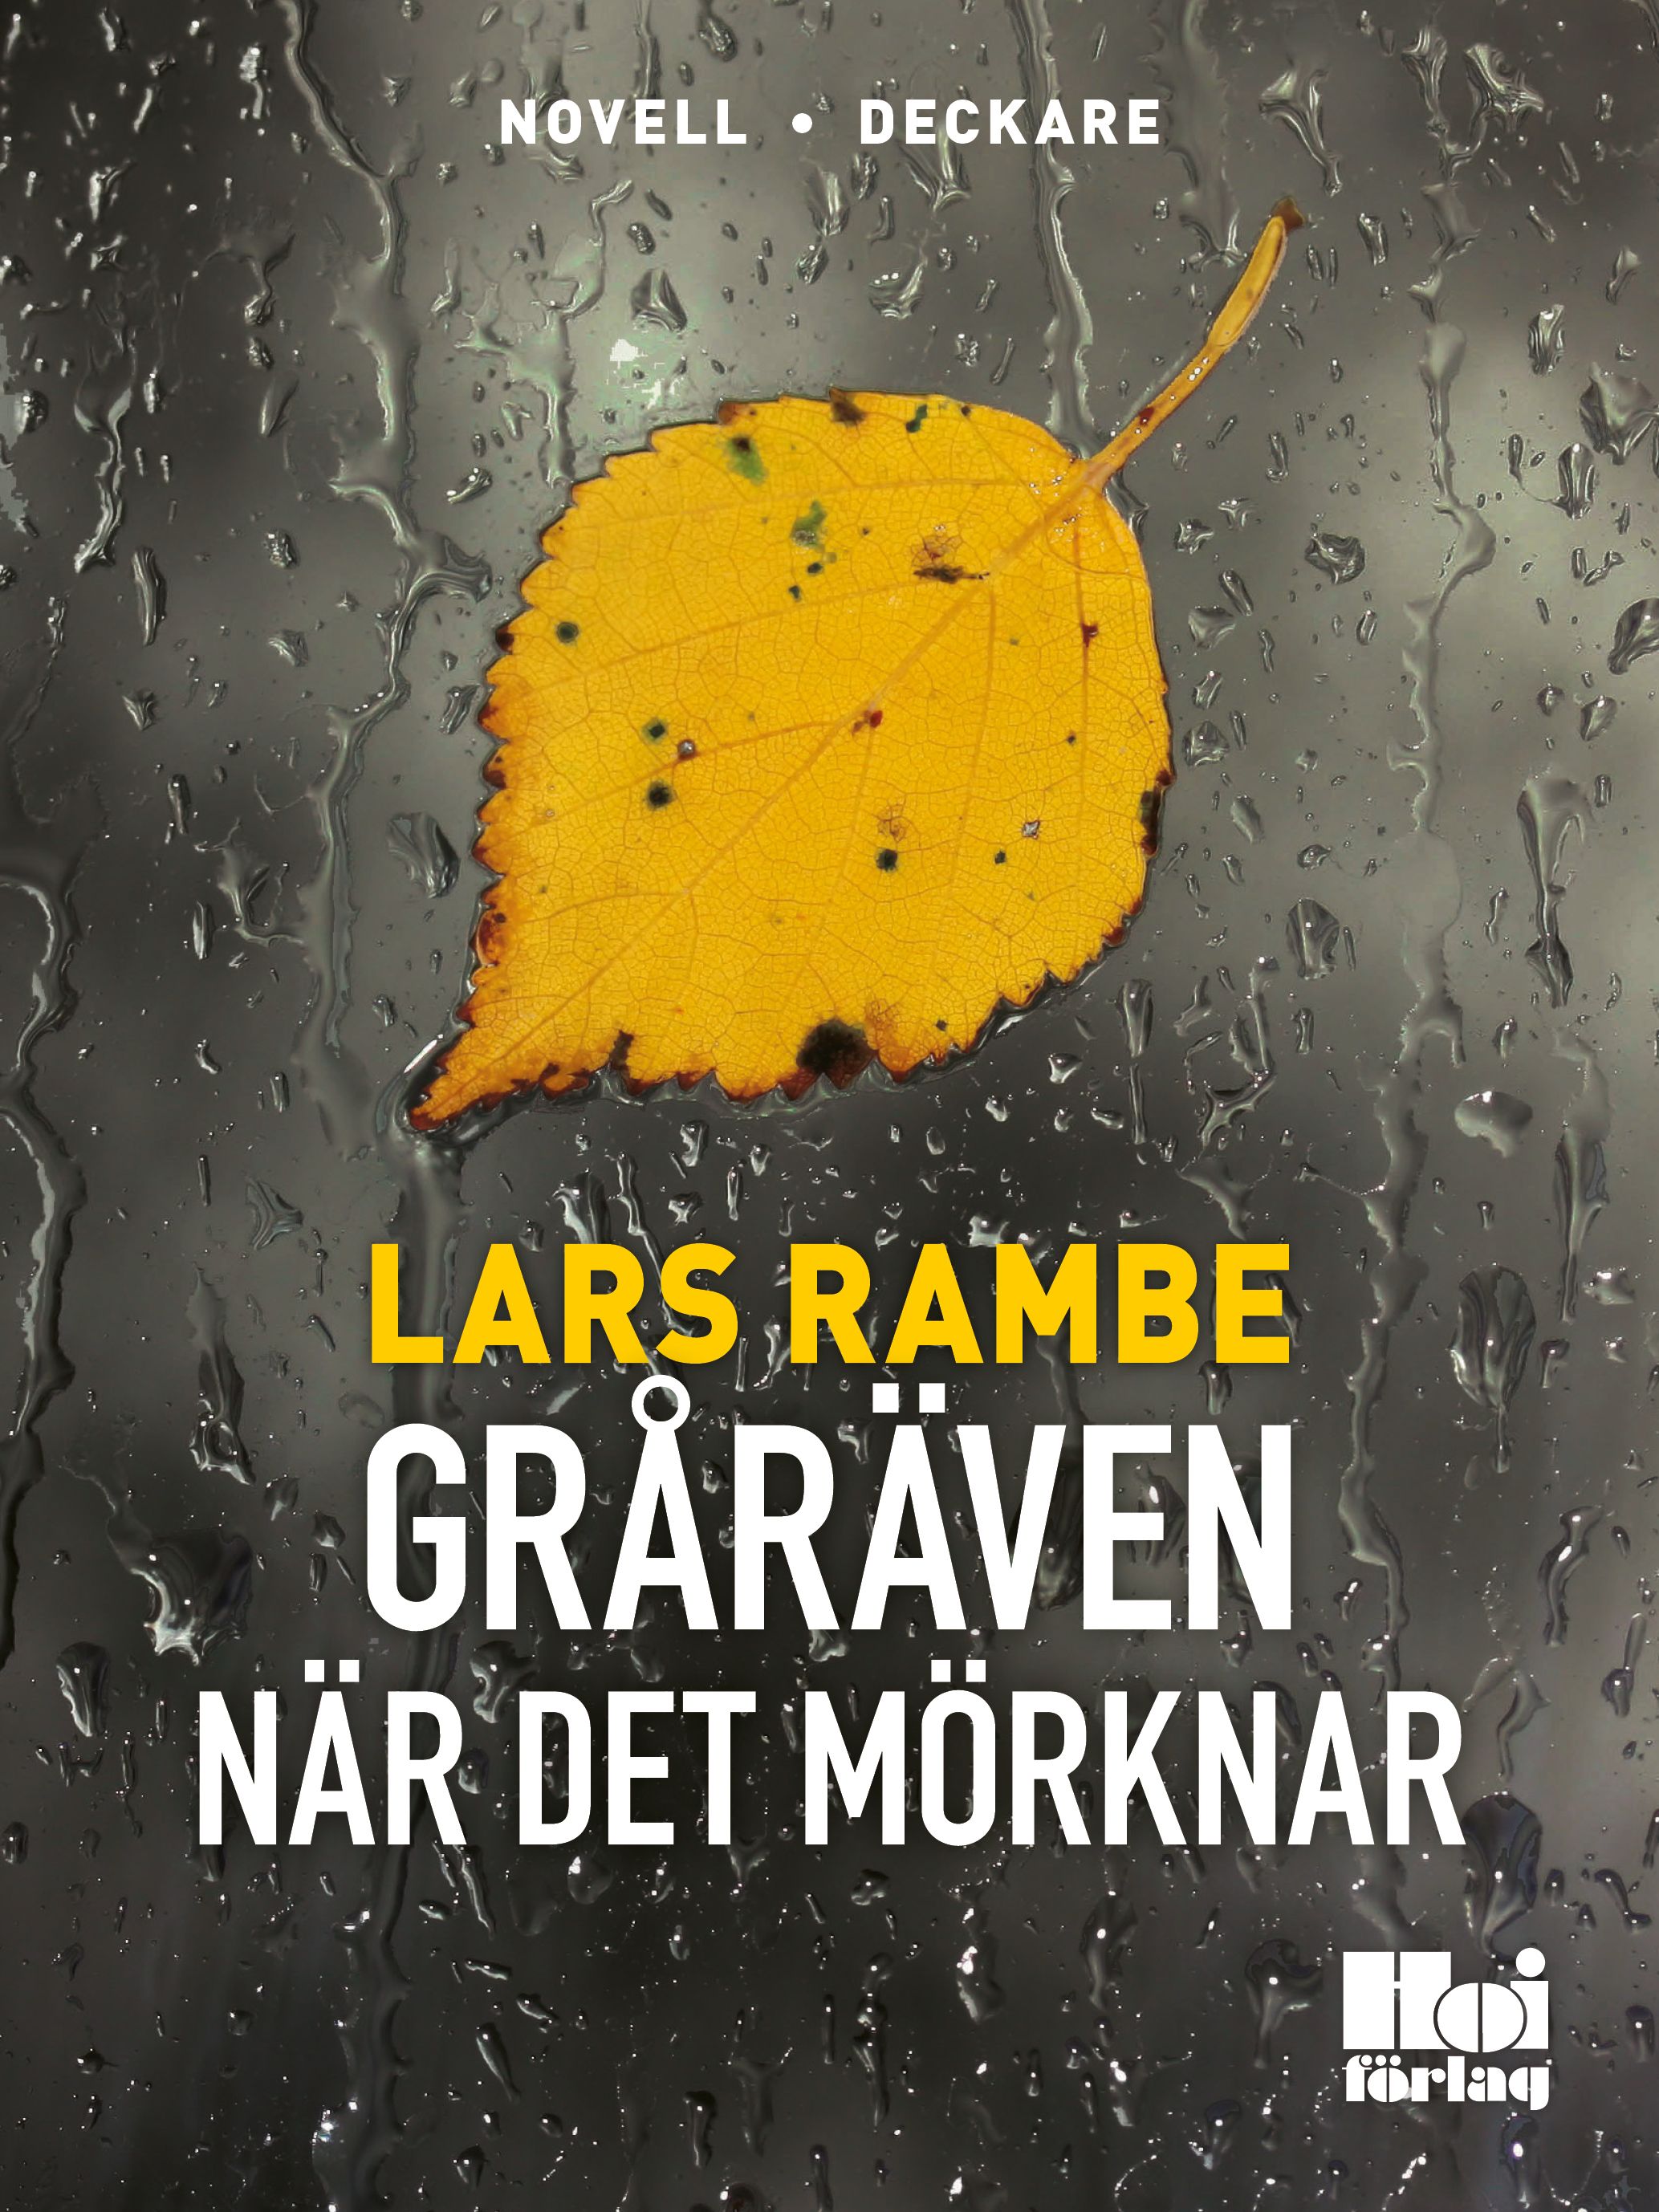 Gråräven - När det mörknar, e-bog af Lars Rambe